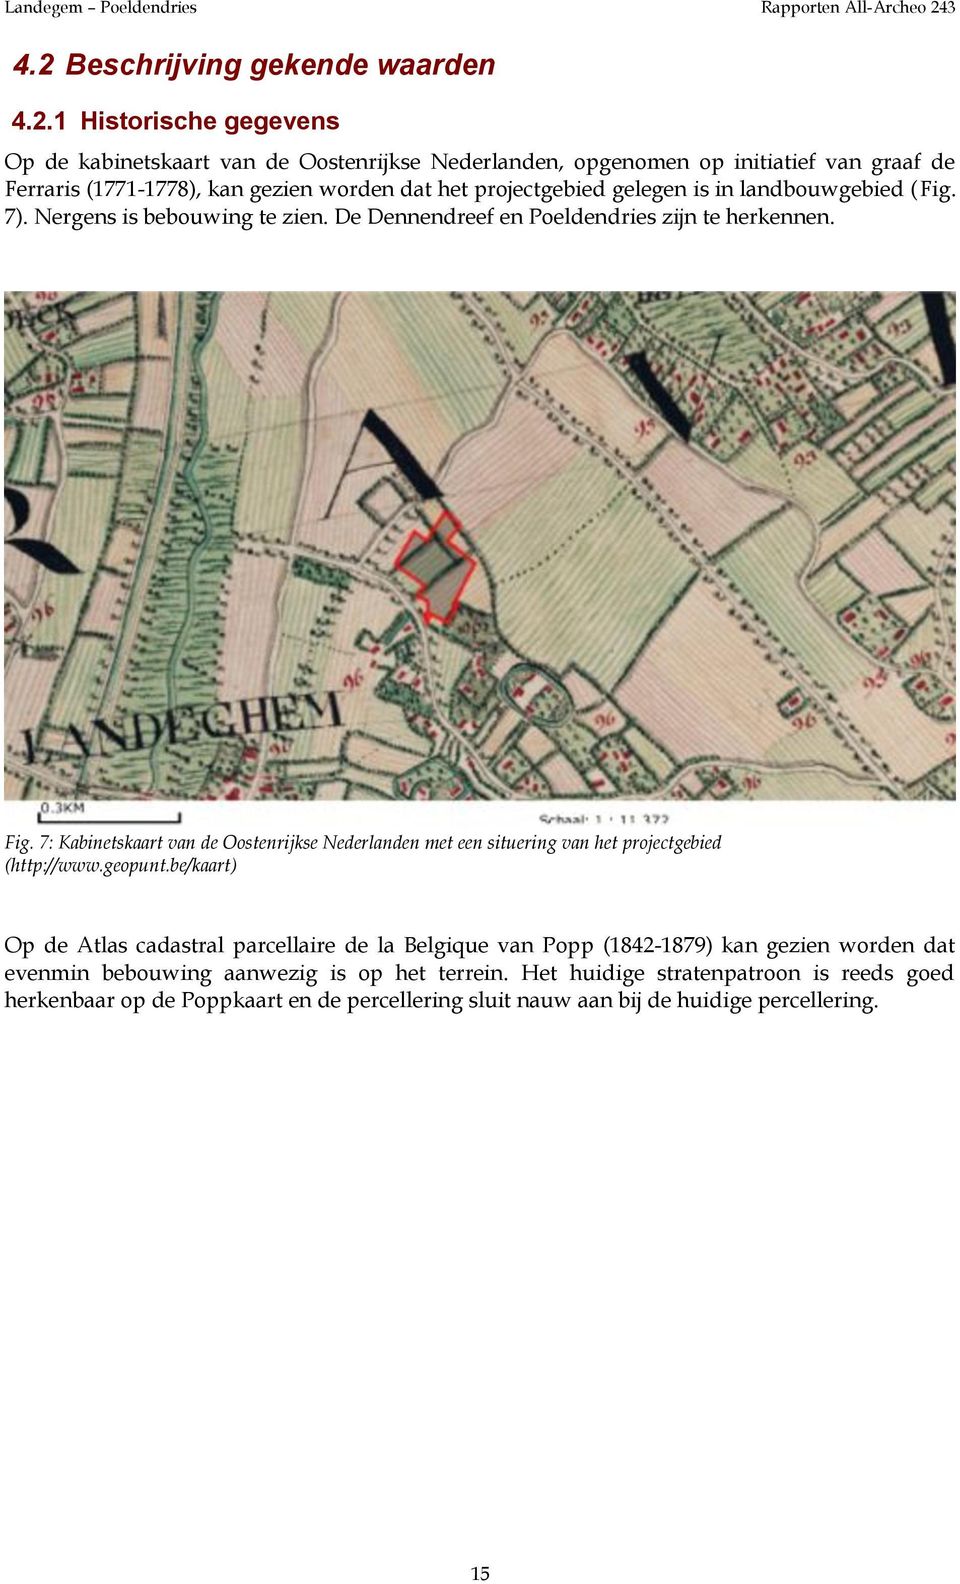 7: Kabinetskaart van de Oostenrijkse Nederlanden met een situering van het projectgebied (http://www.geopunt.